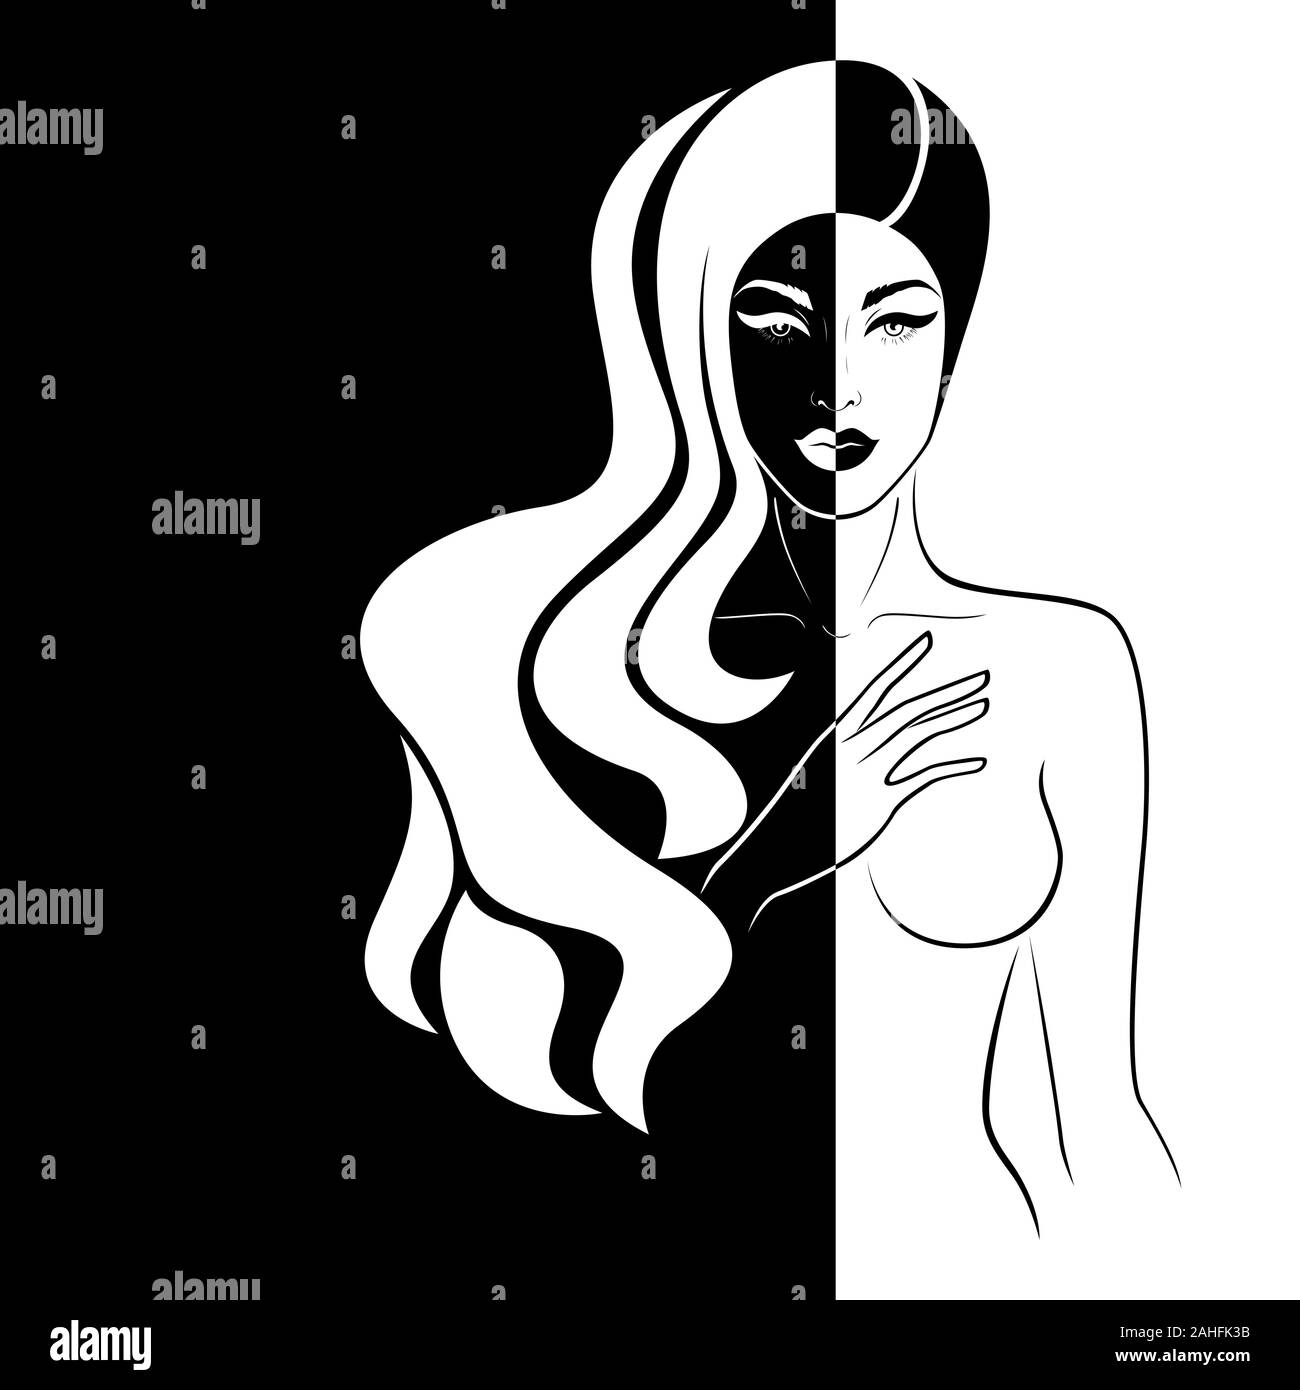 Abstrakte attraktive Frau mit langem Haar Split in negativen und positiven Raum, Schwarze und Weiße konzeptionelle Ausdruck, hand Zeichnung Abbildung Stock Vektor